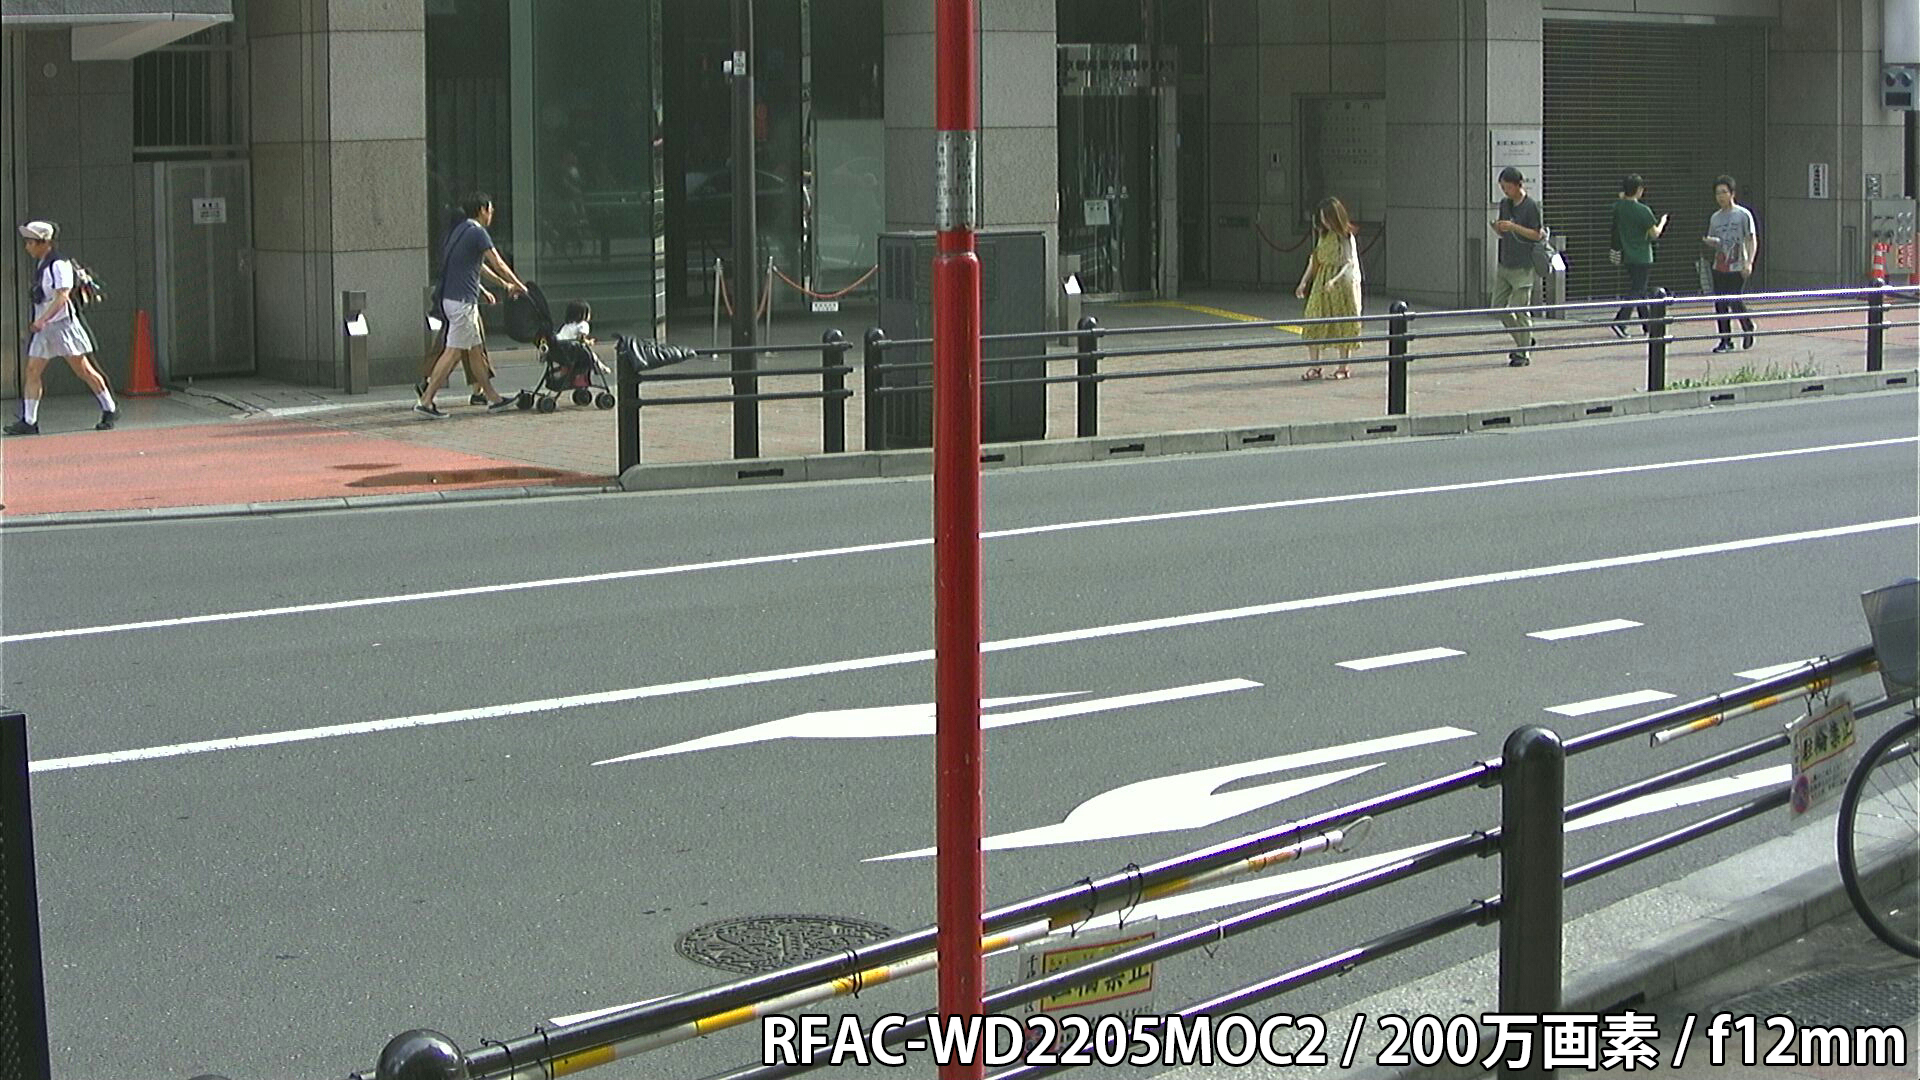 RFAC-WD2205MOC2 カメラから約40cm離れた被写体を低照度撮影